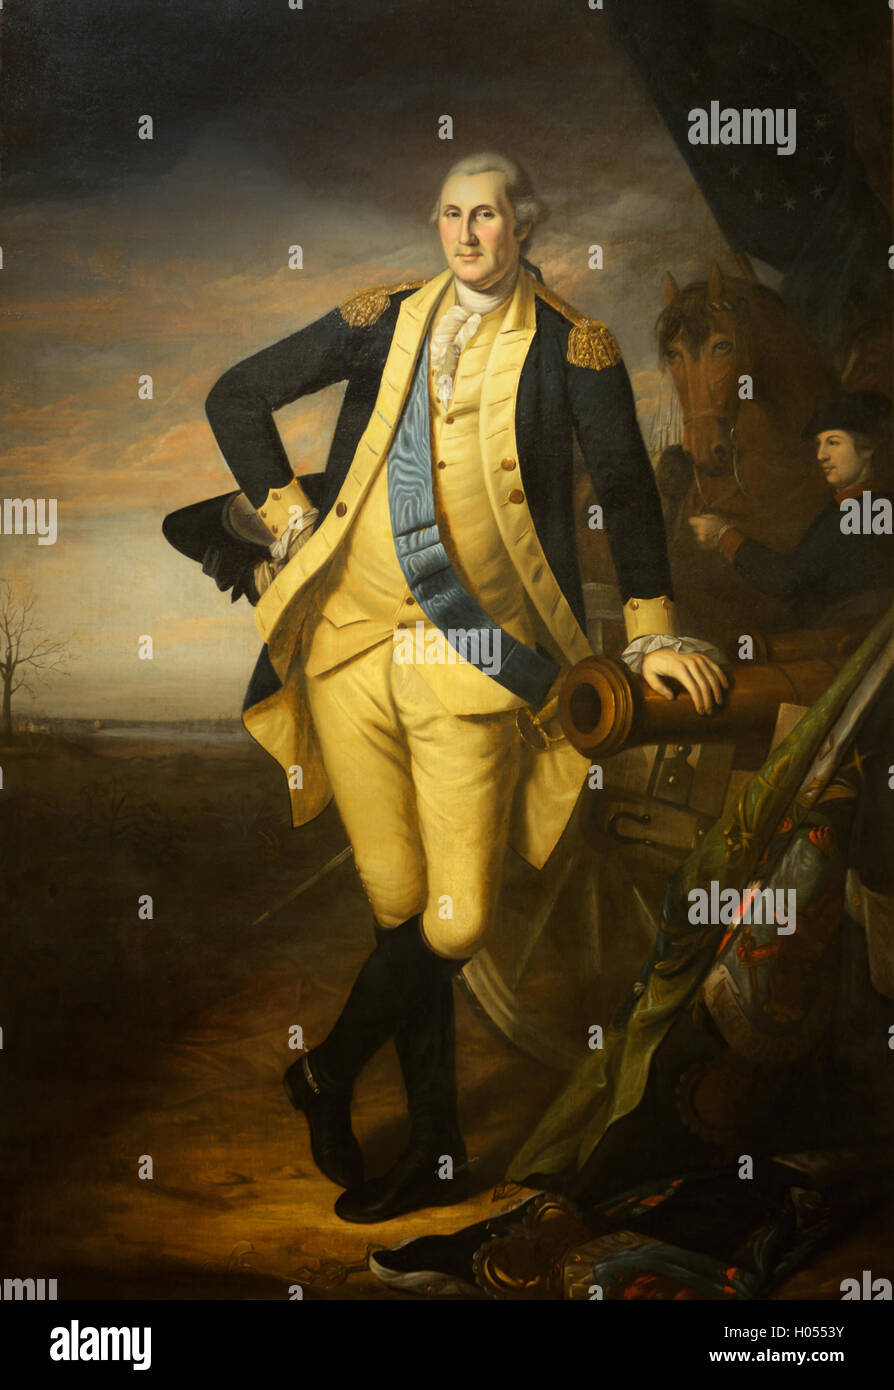 George Washington, Schlacht von Trenton, stehend in Militäruniform, gemalt von Charles Wilson Peale ca 1779-1781 Stockfoto